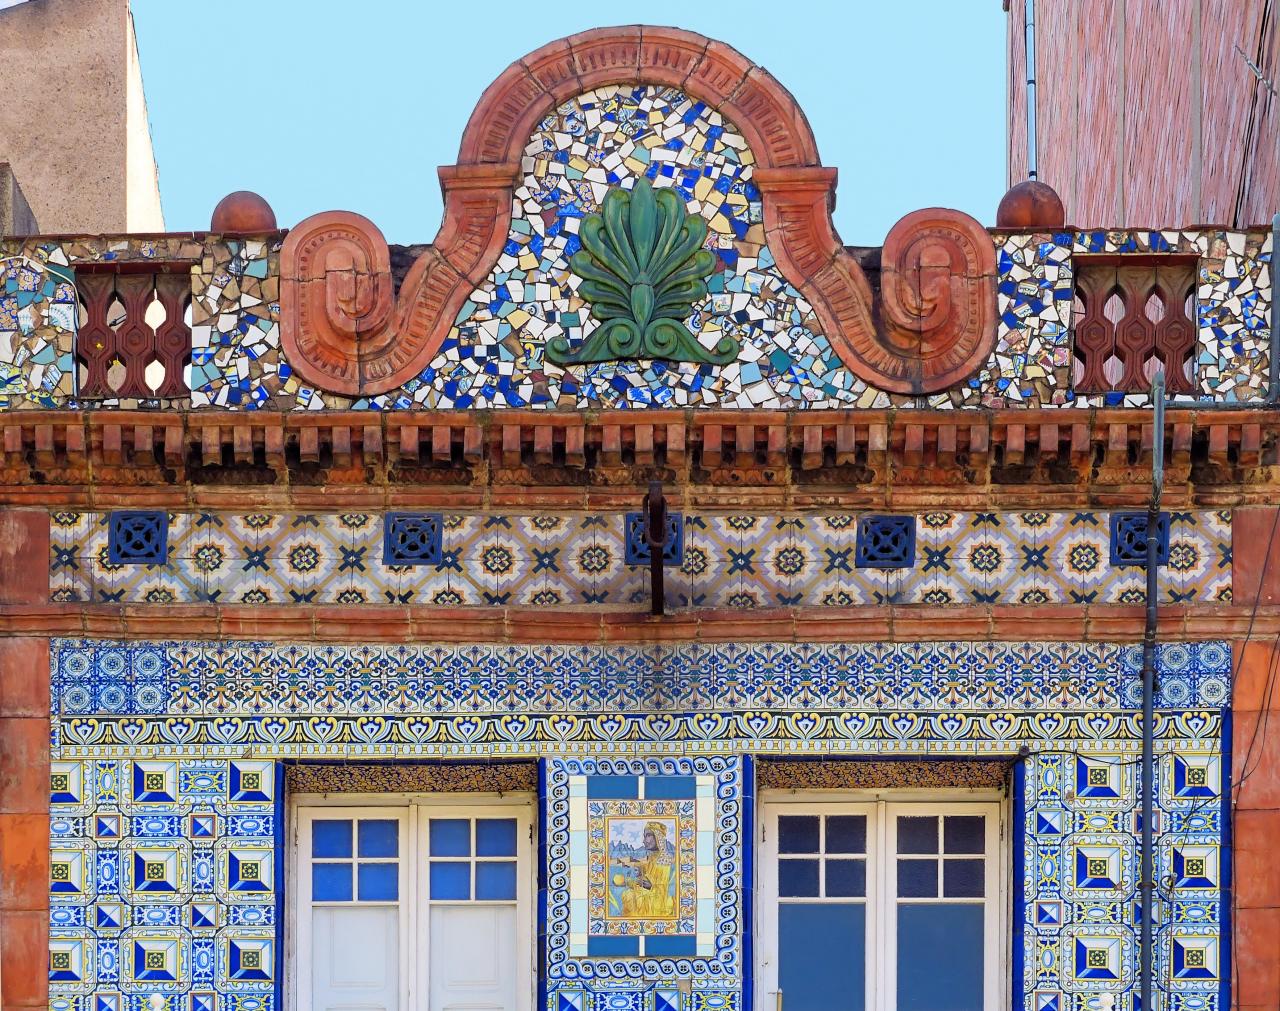 Испанские мотивы пестрой керамики на фасаде в стиле модерн